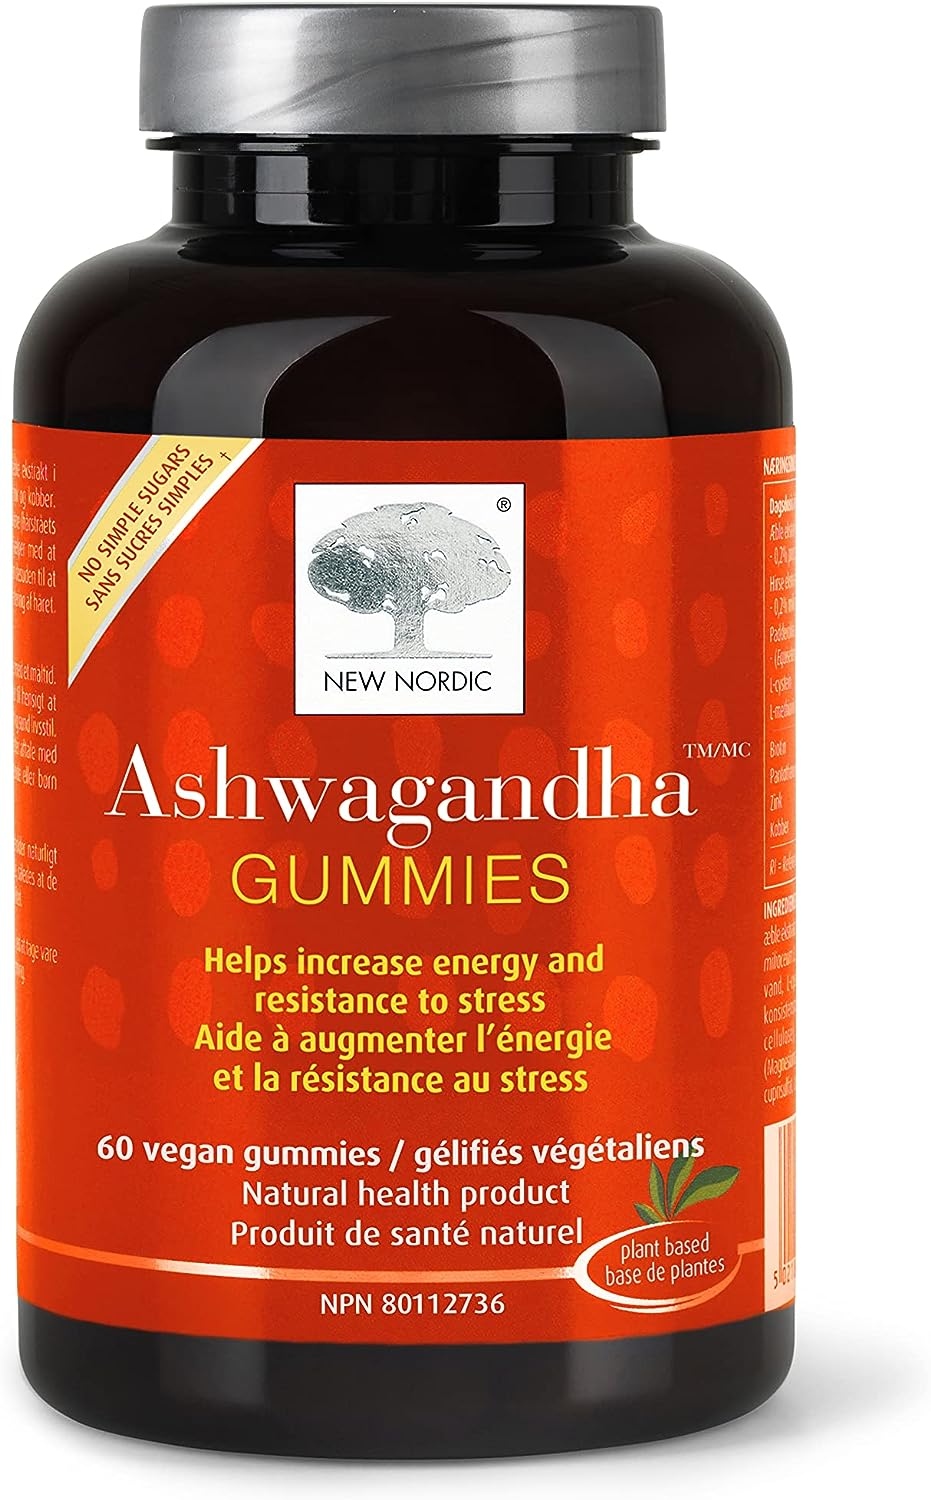 New Nordic Ashwagandha Gummies 60 vegan gummies